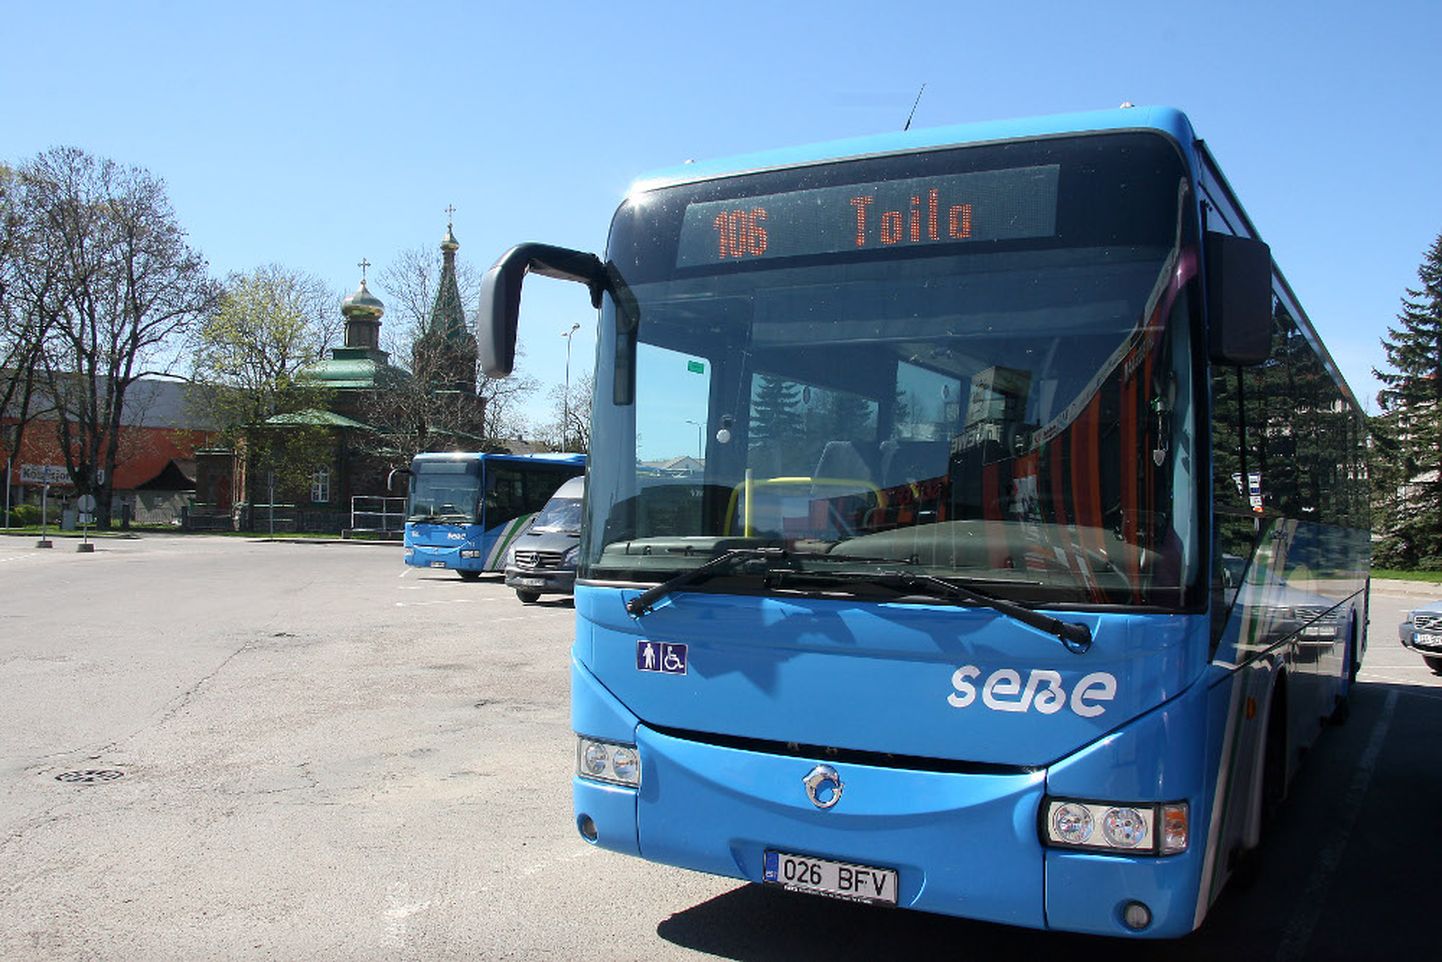 Ida-Viru maakonnaliine teenindab praegu AS Sebe ning neil liinidel sõitvad bussid tunneb ära sinise värvi järgi. Pilet on vahemaale vaatamata oluliselt odavam kui näiteks Kohtla-Järve linnaliinidel. Kui viimaste bussides maksab doteeritud pilet 1,10 eurot, siis näiteks Jõhvist Toilasse sõitval riiklikult doteeritud maakonnaliini bussis küsitakse sihtkohta jõudmise eest 70 senti.

PEETER LILLEVÄLI